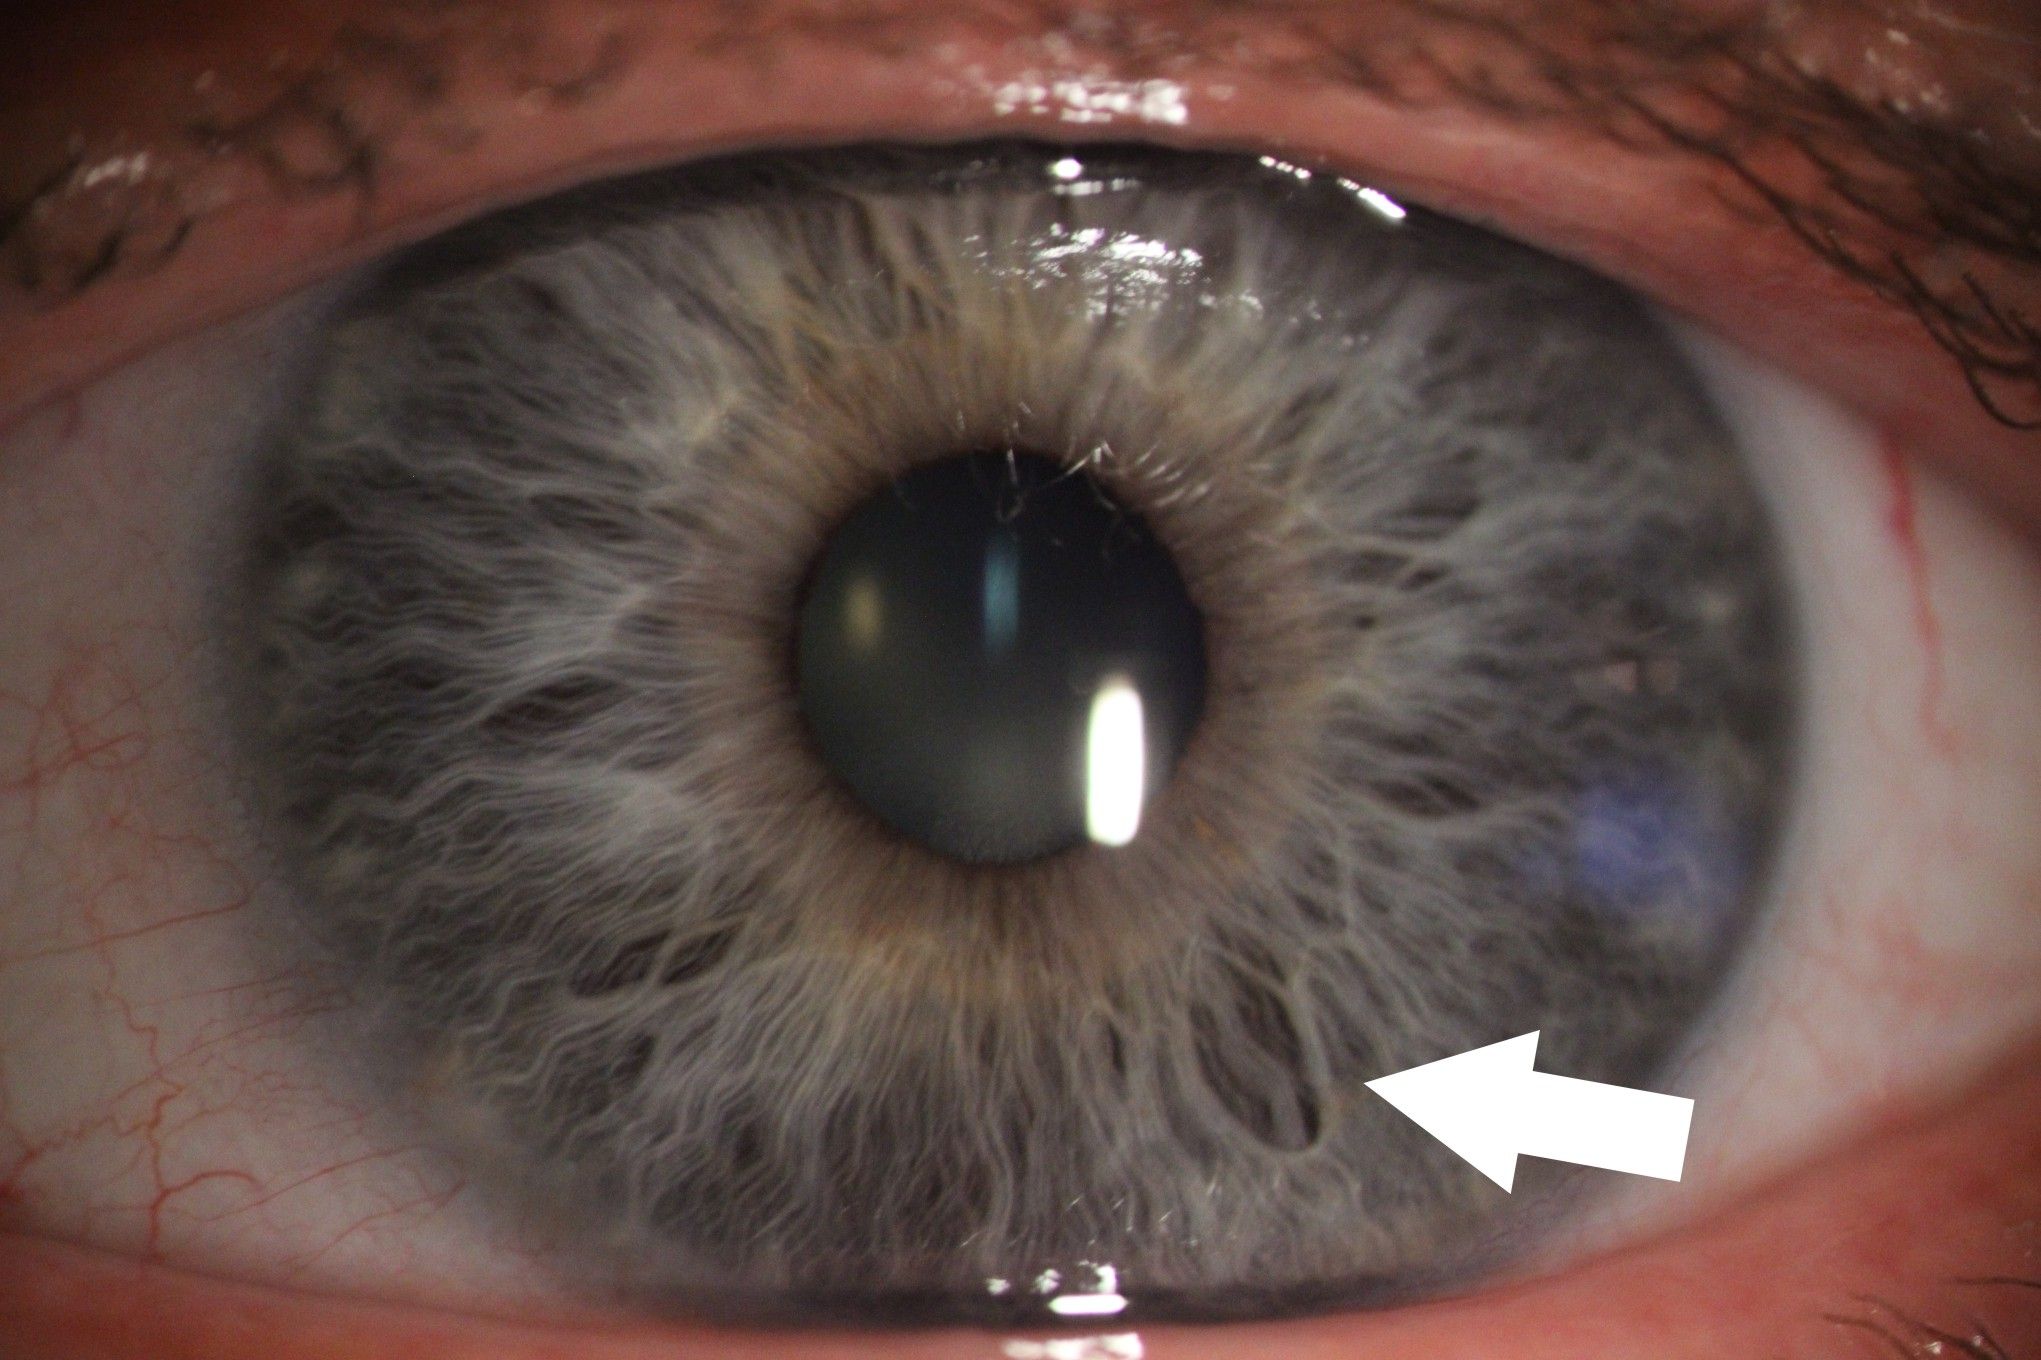 Zdjęcie tęczówki oka z aparatu podczas badania. Jest zaznaczona strzałka wskazująca zmiany na tęczówce. 